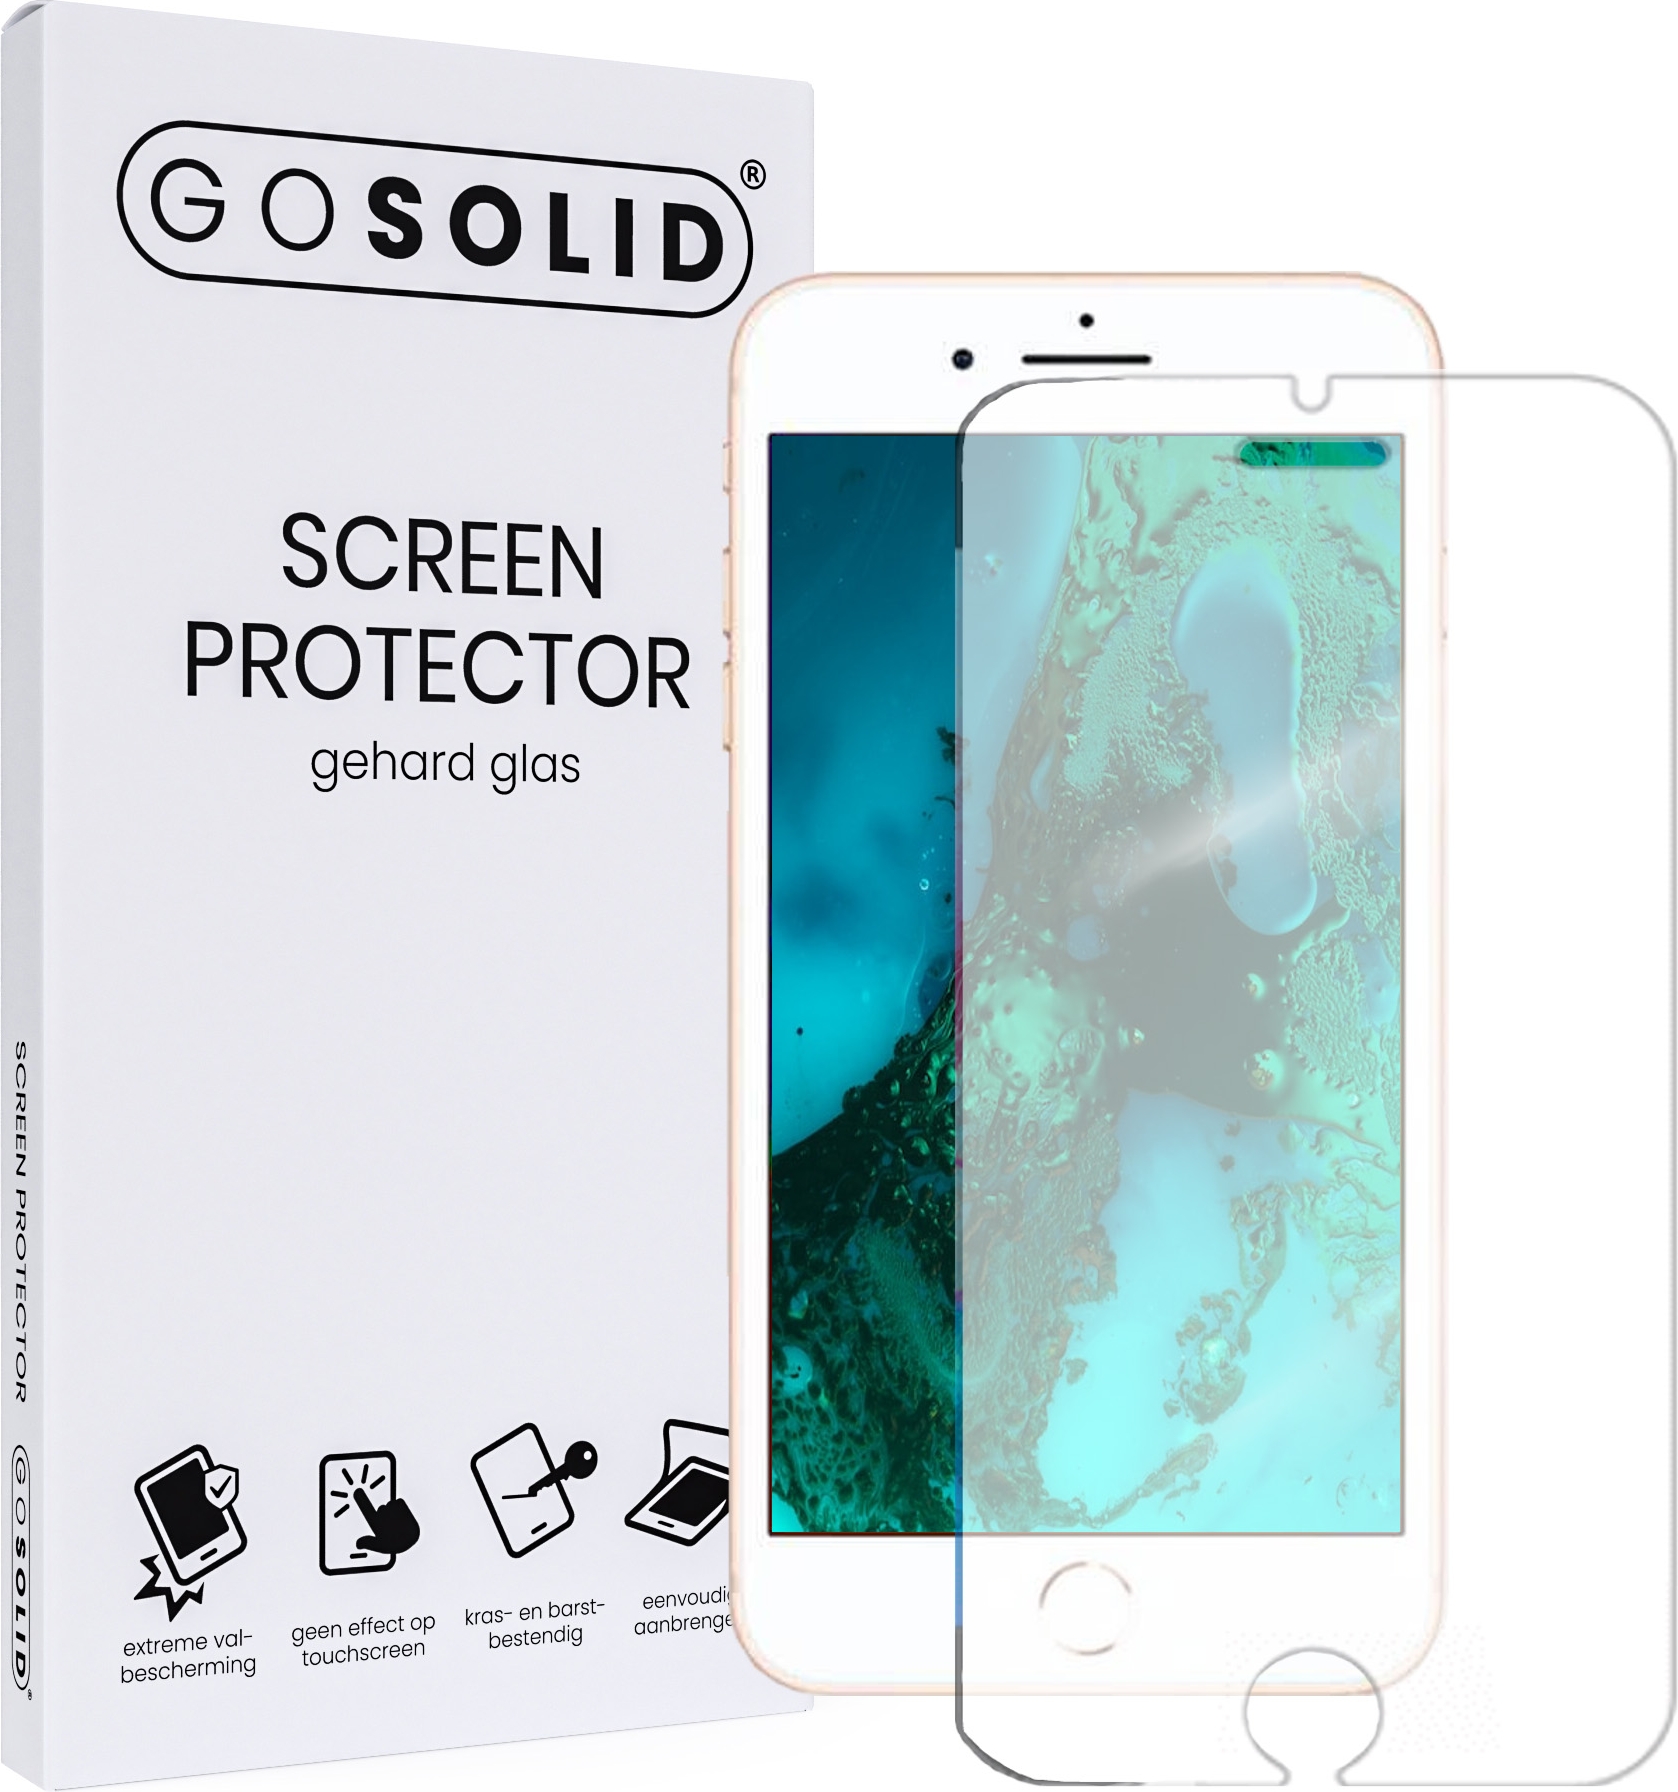 medeleerling Ideaal Uitputten ᐅ • GO SOLID! iPhone 5/5C/5S screenprotector gehard glas | Eenvoudig bij  ScreenProtectors.nl